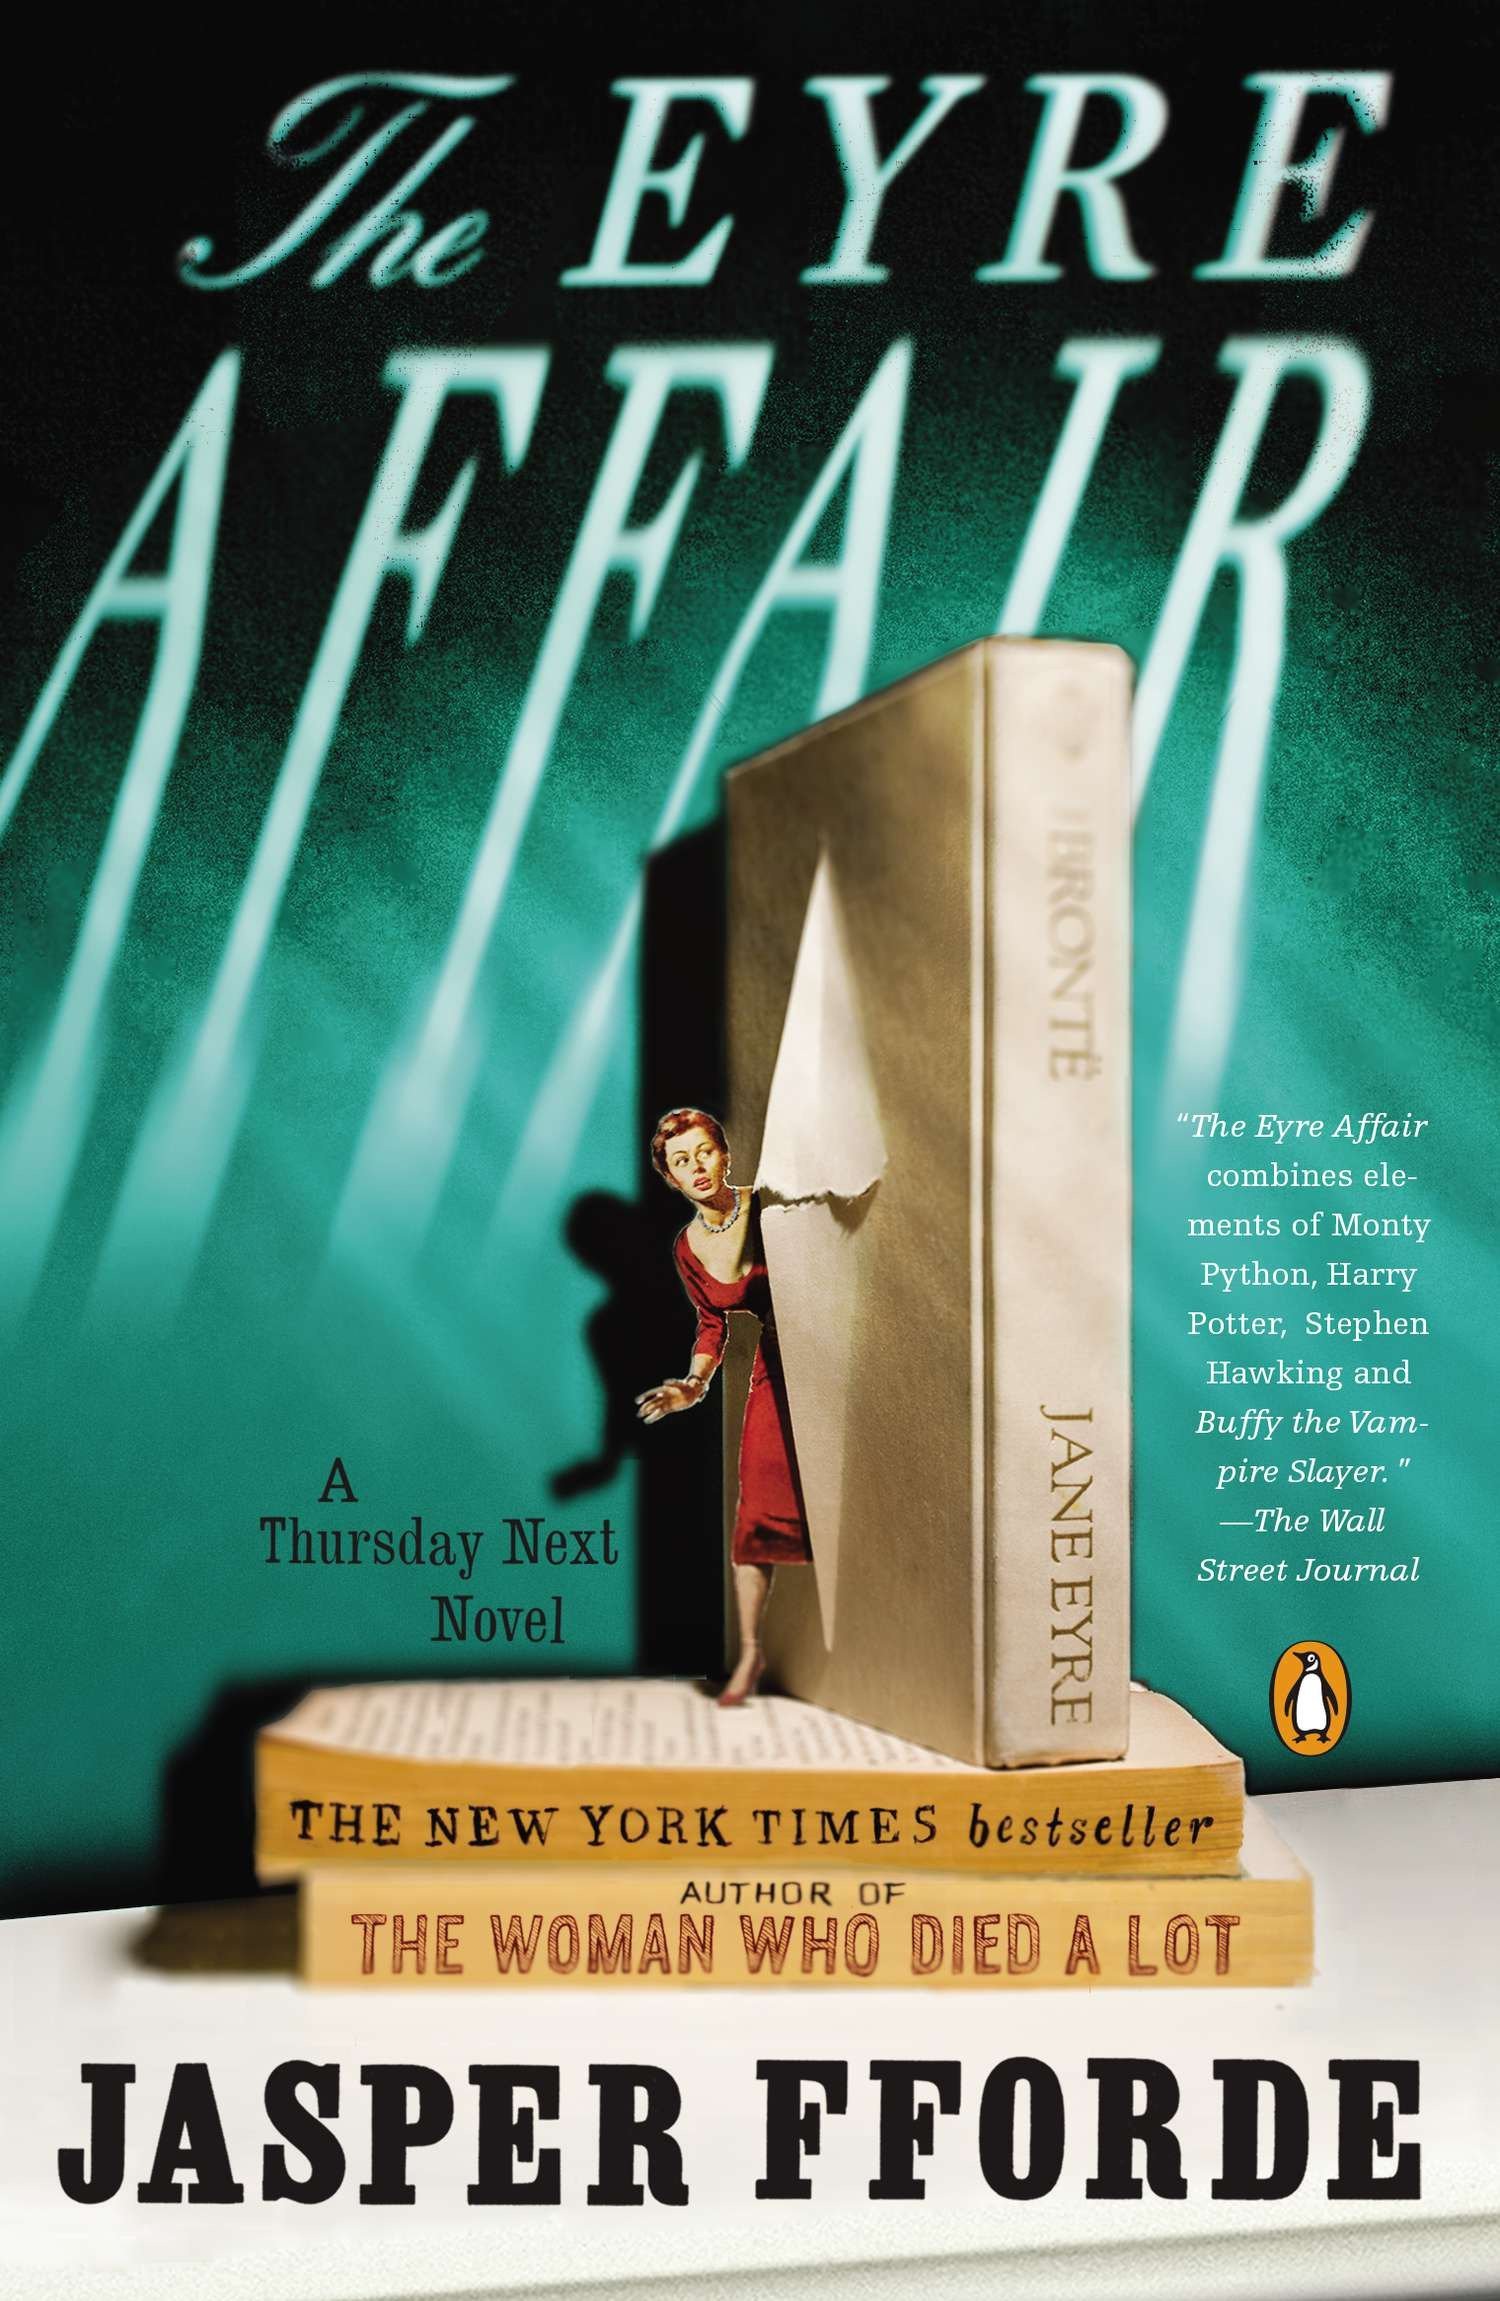 The Eyre Affair by Jasper Fforde.